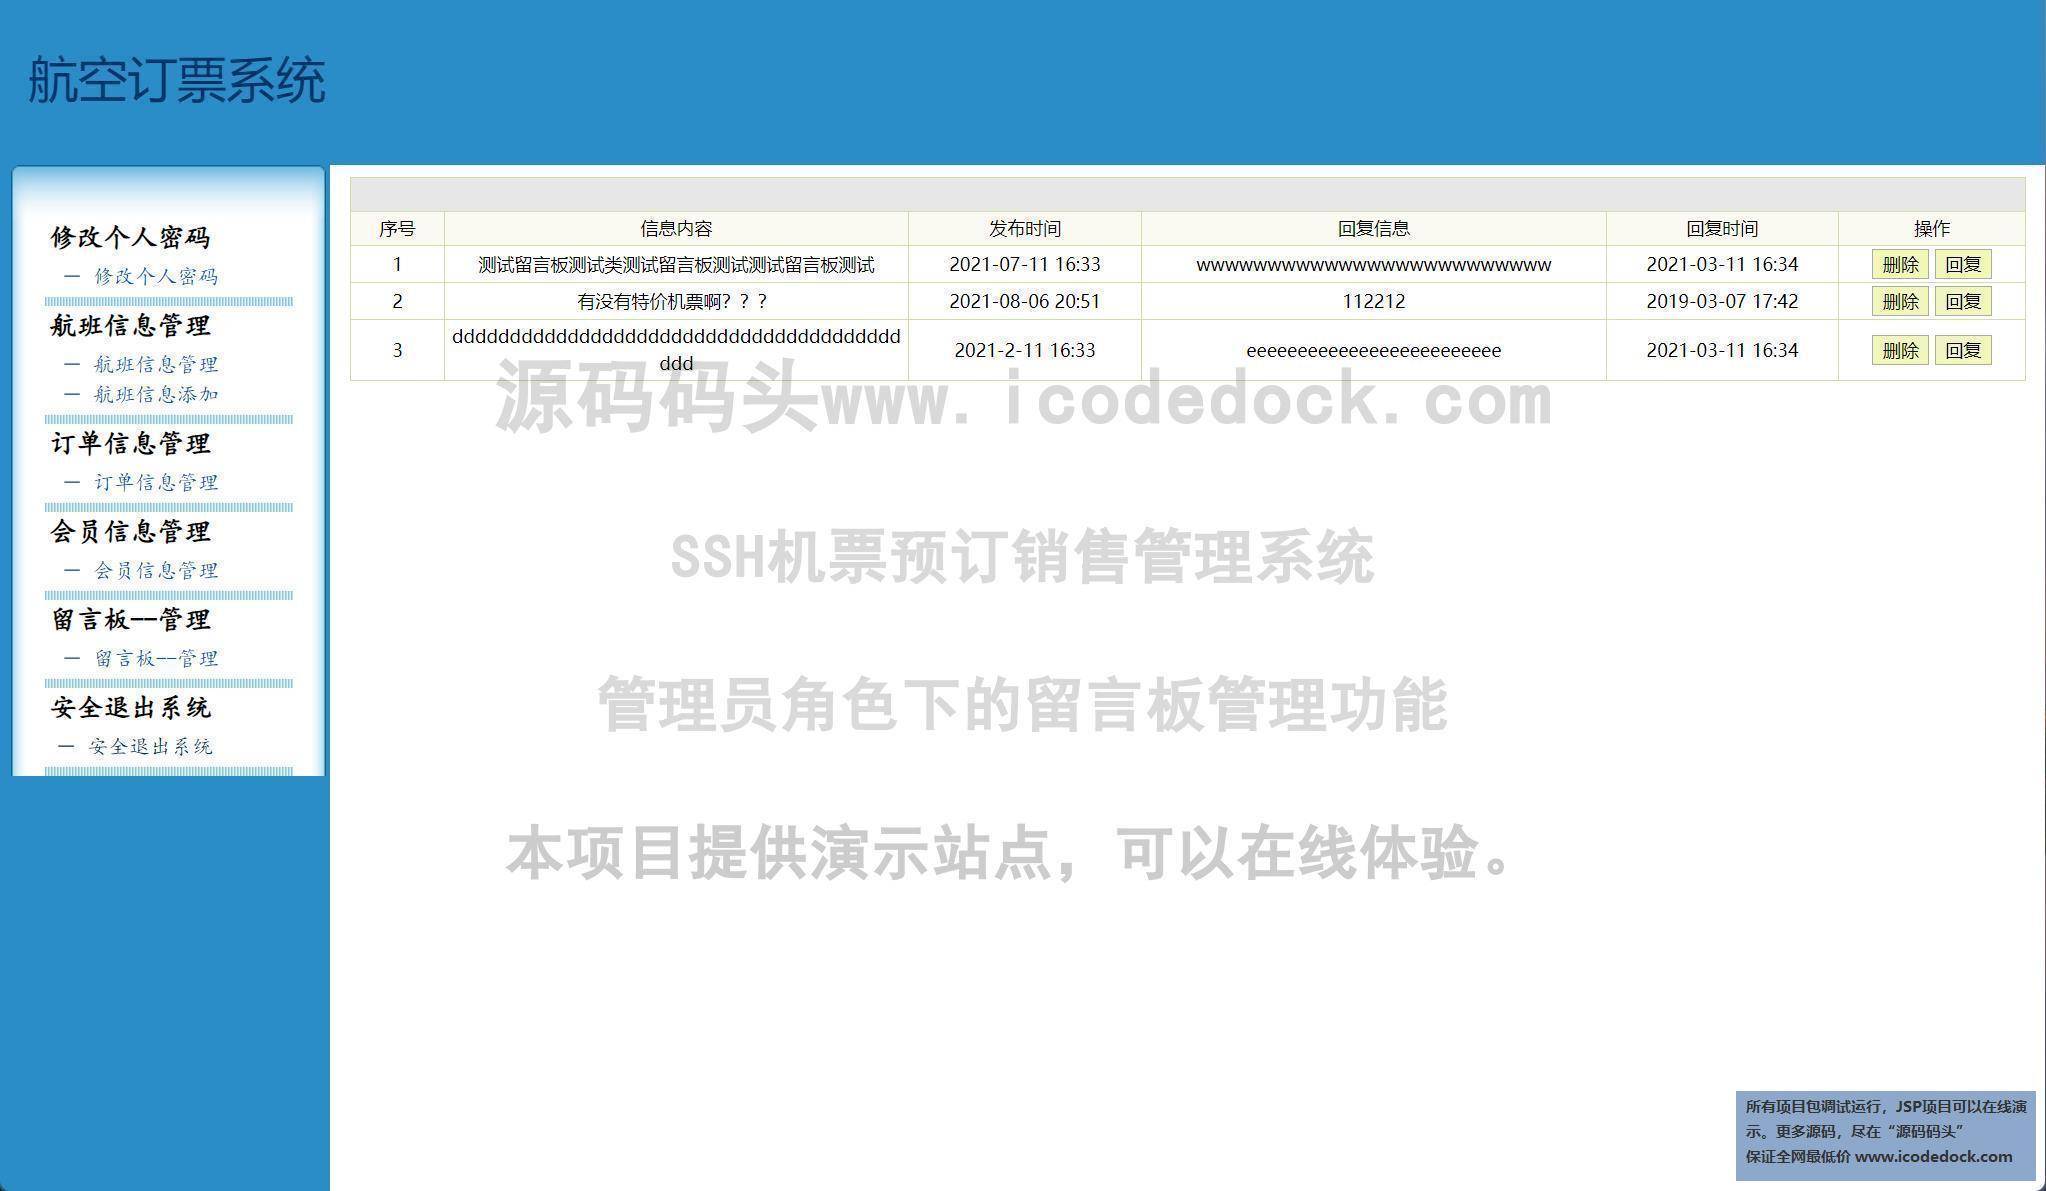 源码码头-SSH机票预订销售管理系统-管理员角色-留言板管理